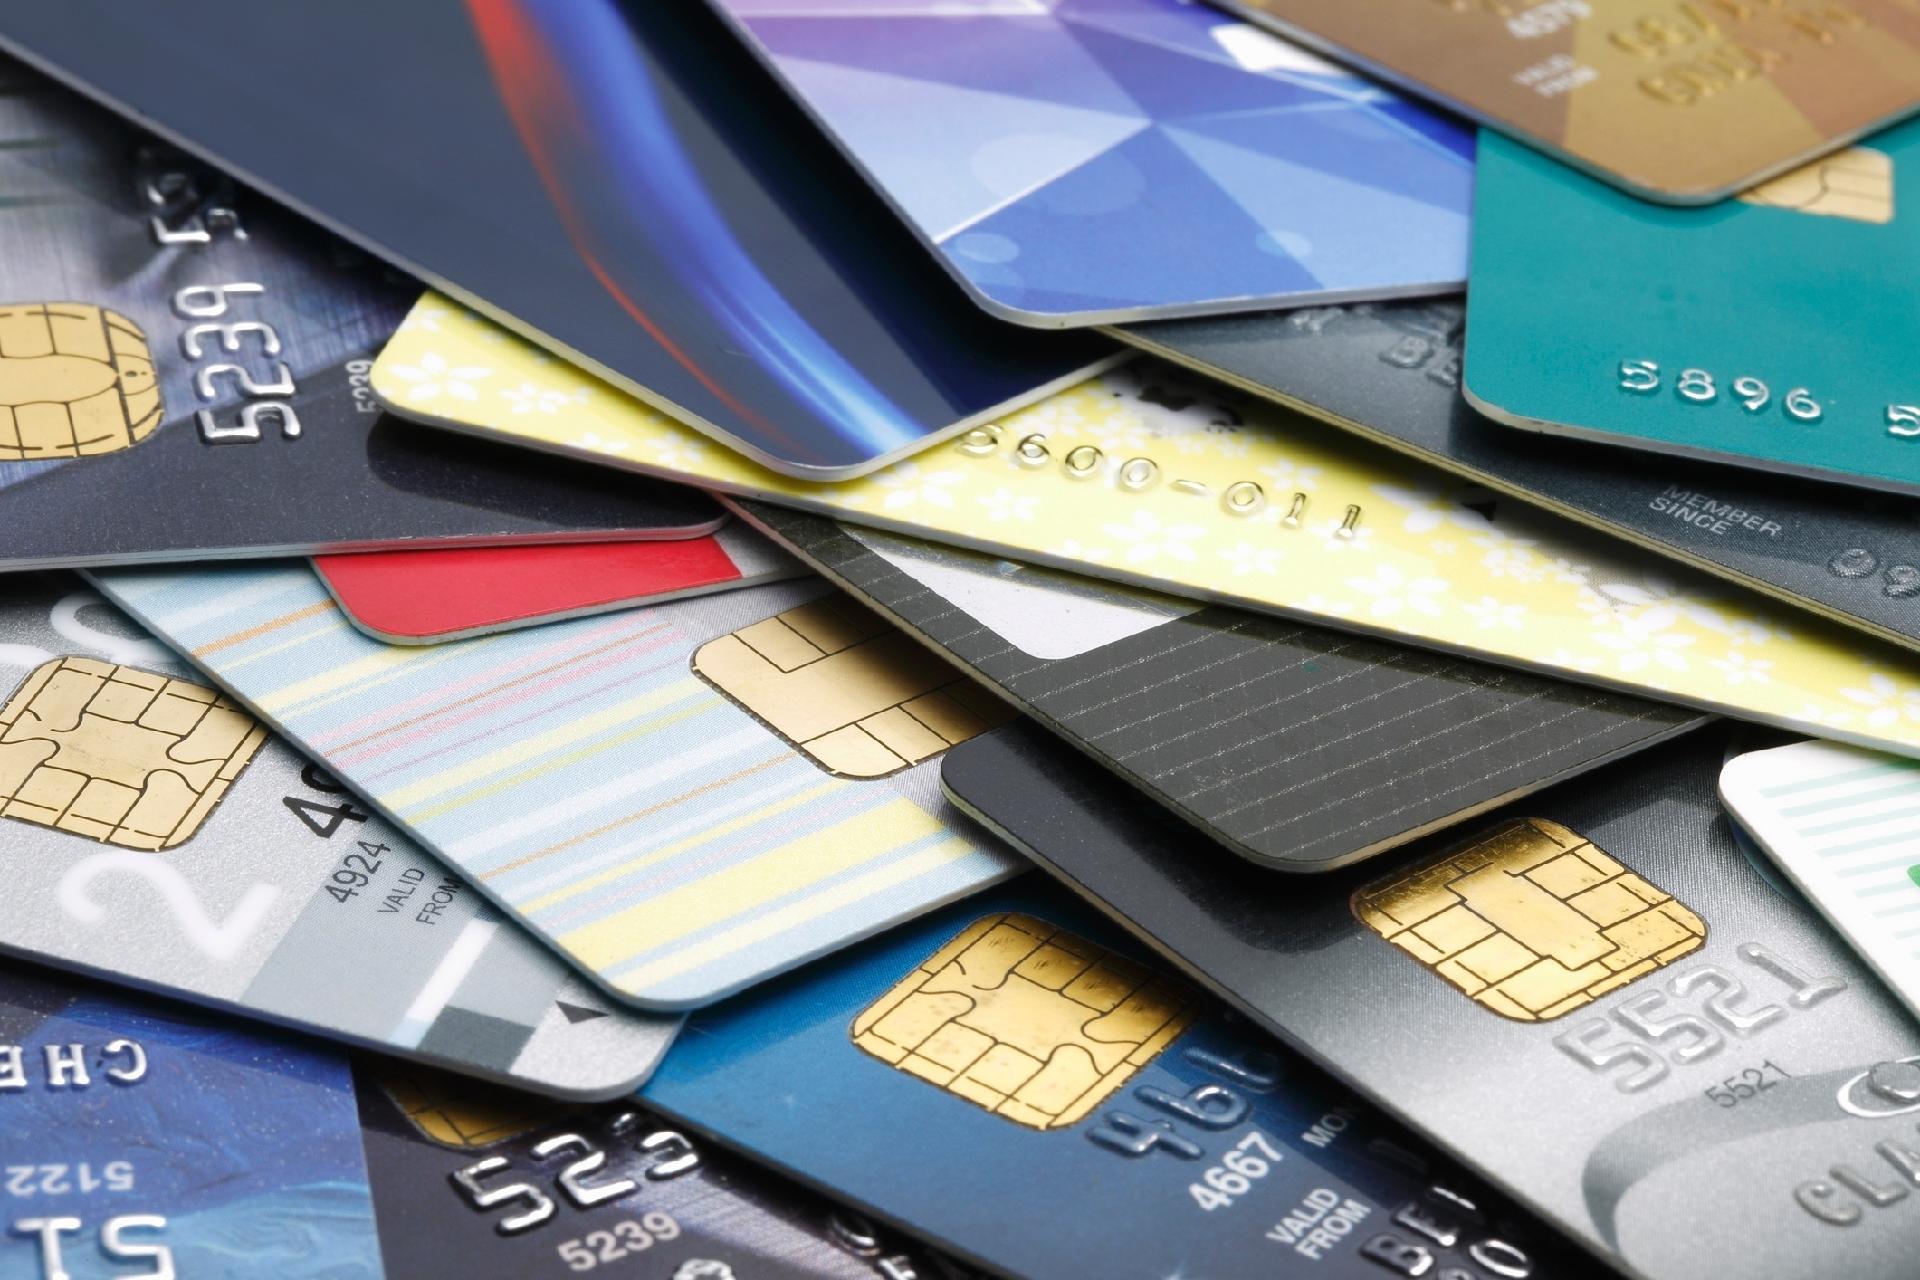 Cartão de crédito como conhecemos está quase chegando ao fim (Foto: Reprodução/ Internet)